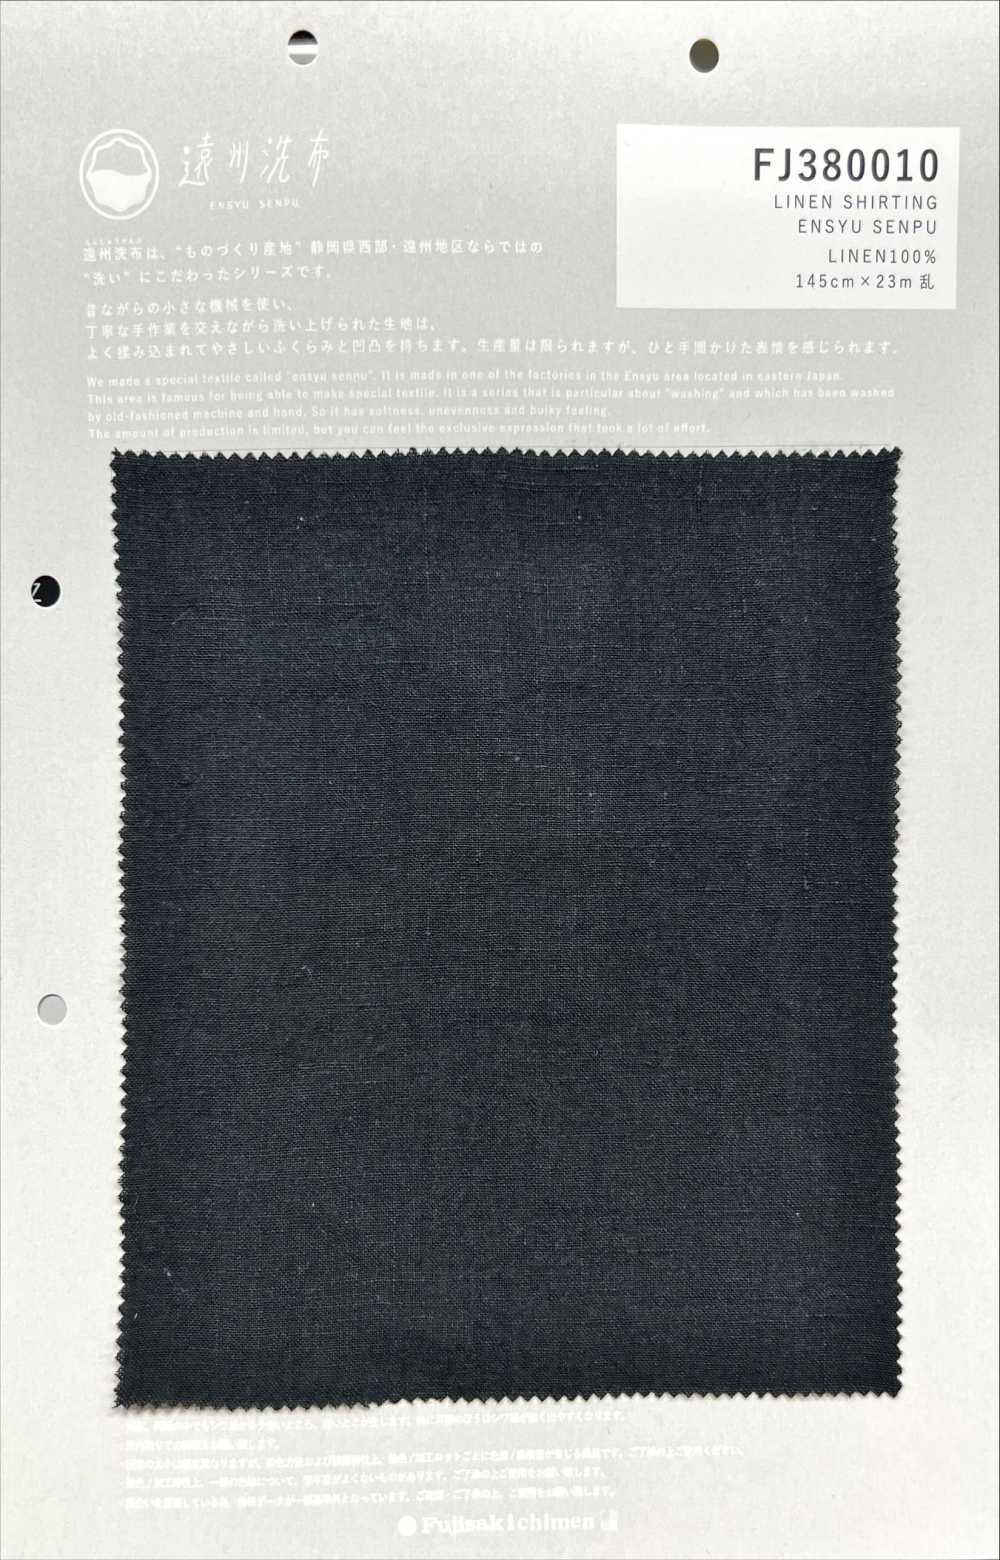 FJ380010 亚麻衬衫 远州先普[面料] Fujisaki Textile